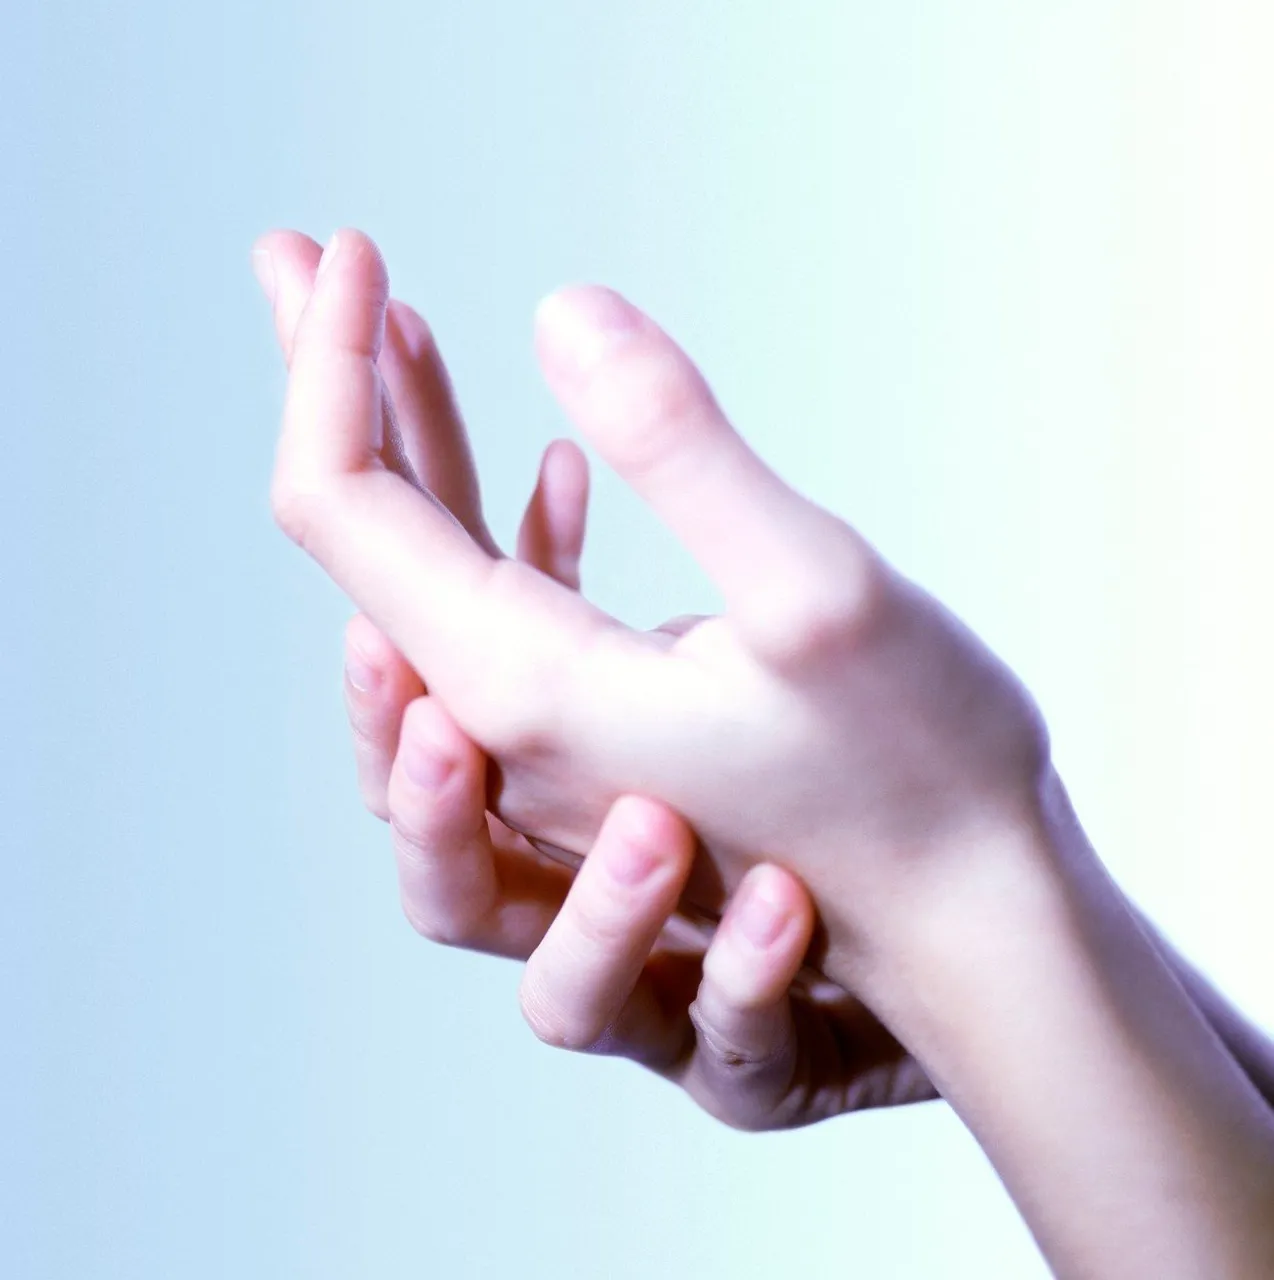 Duljina prstiju može otkriti o vama više informacija nego što ste ikada mislili